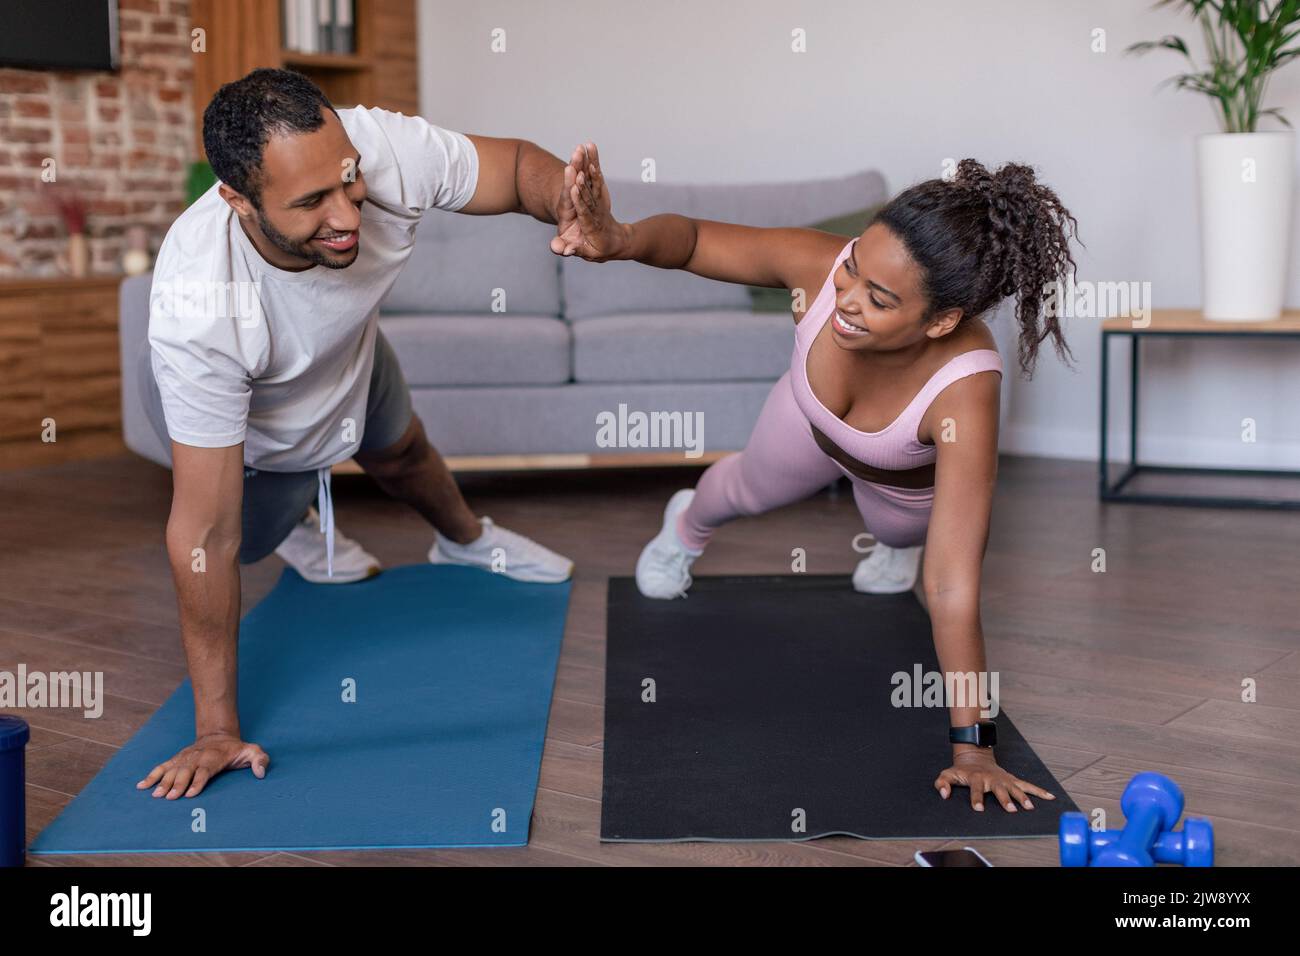 Lächelnde junge afroamerikanische Dame und Mann in Sportkleidung, die Plank-Übungen machen und hohe fünf geben Stockfoto